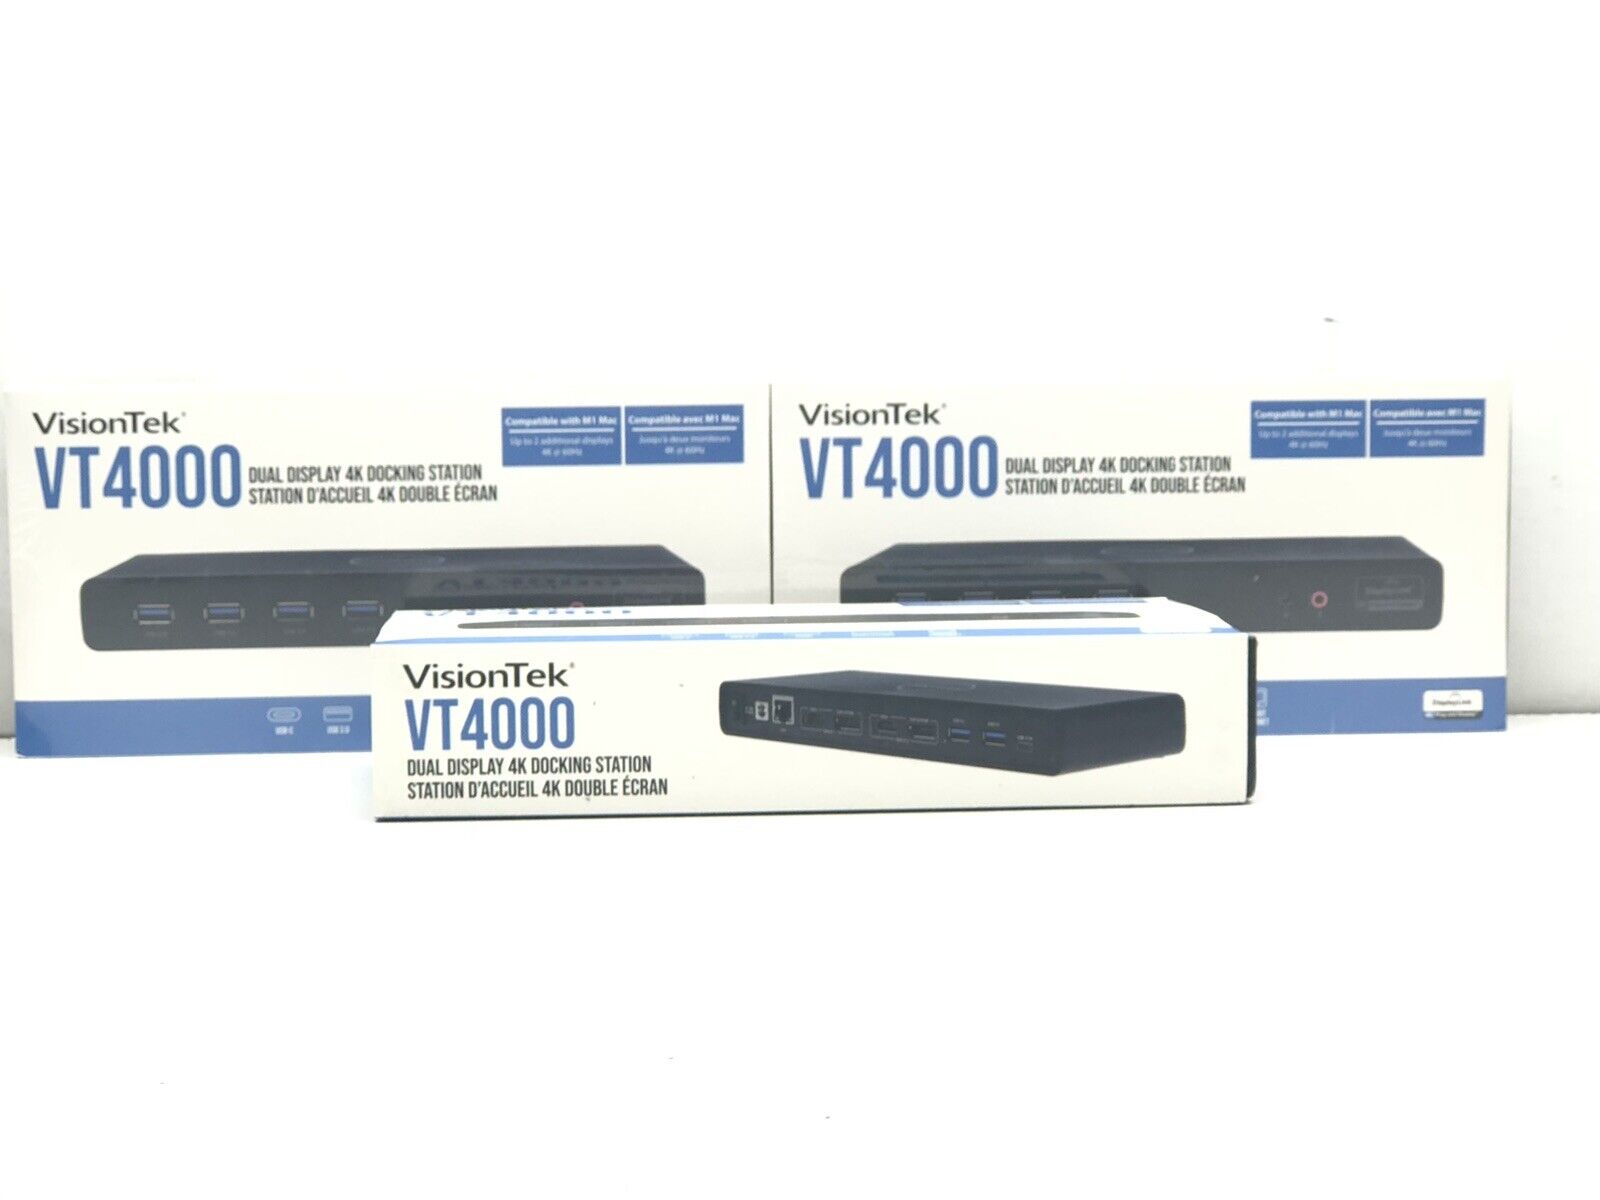 lot of 3 VisionTek VT4000 Dual Display 4K Docking Station 901005 NEW